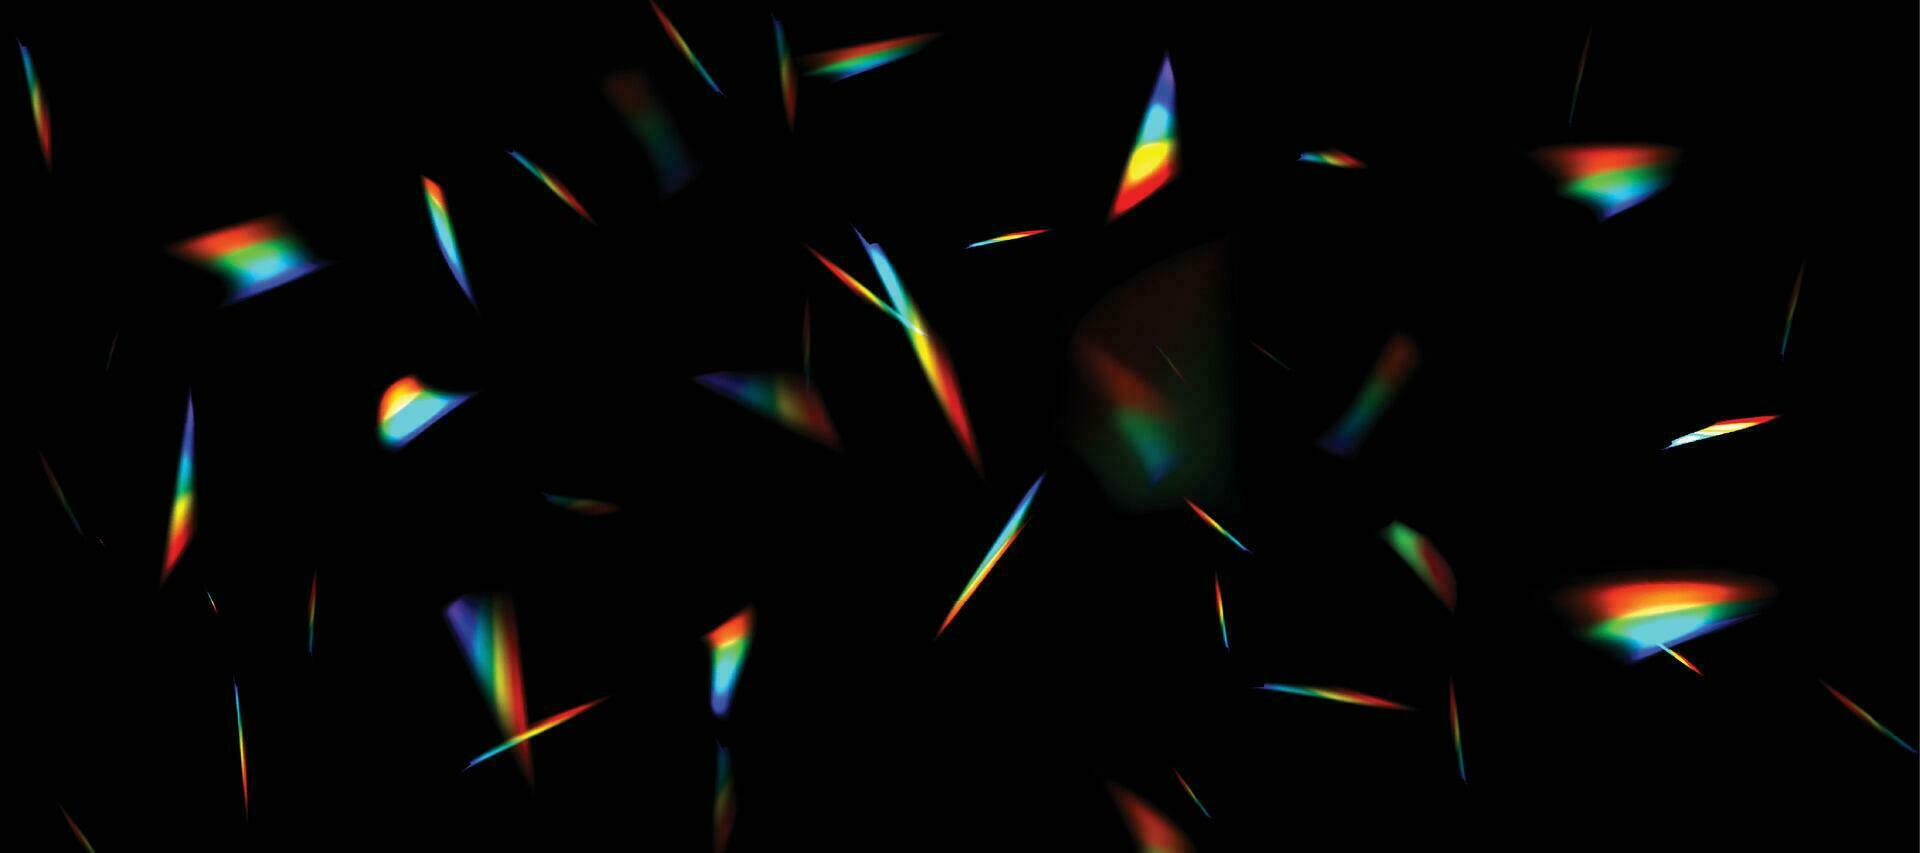 sfocato arcobaleno rifrazione copertura effetto. leggero lente prisma effetto su nero sfondo. olografico riflessione, cristallo bagliore perdita ombra sovrapposizione. vettore astratto illustrazione.